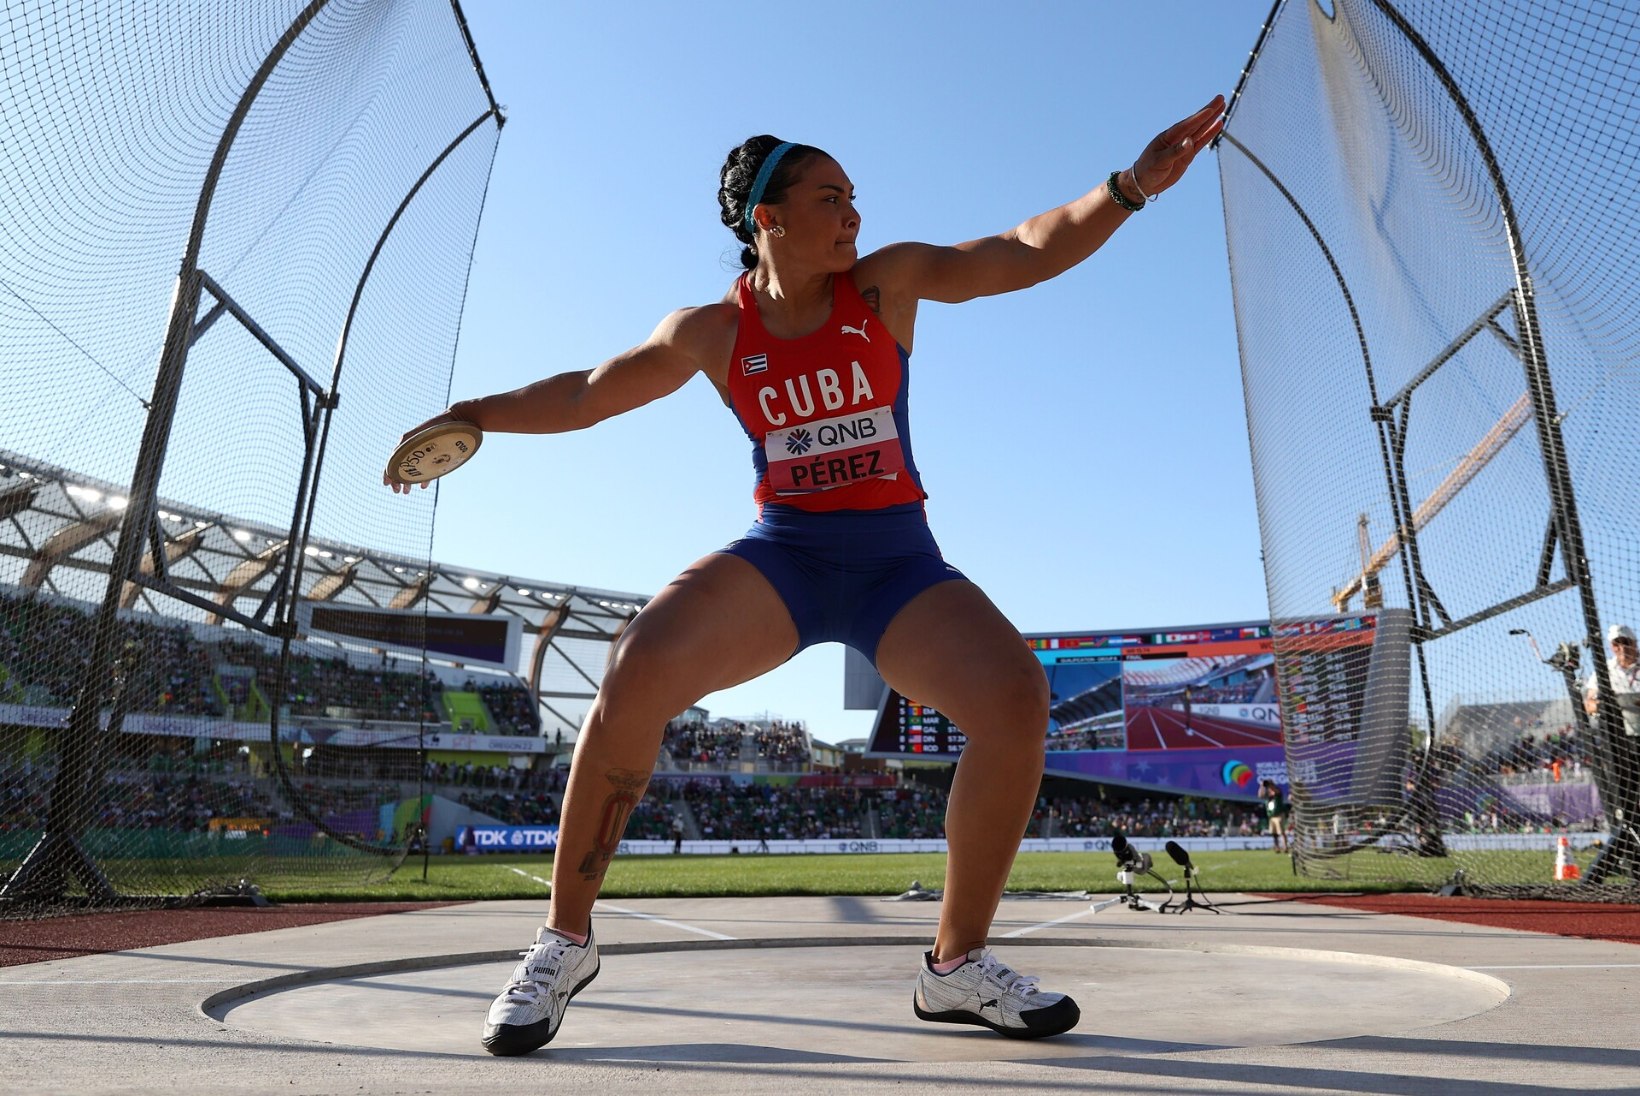 Järjekordne Kuuba olümpiamedalist põgenes võistlusreisil